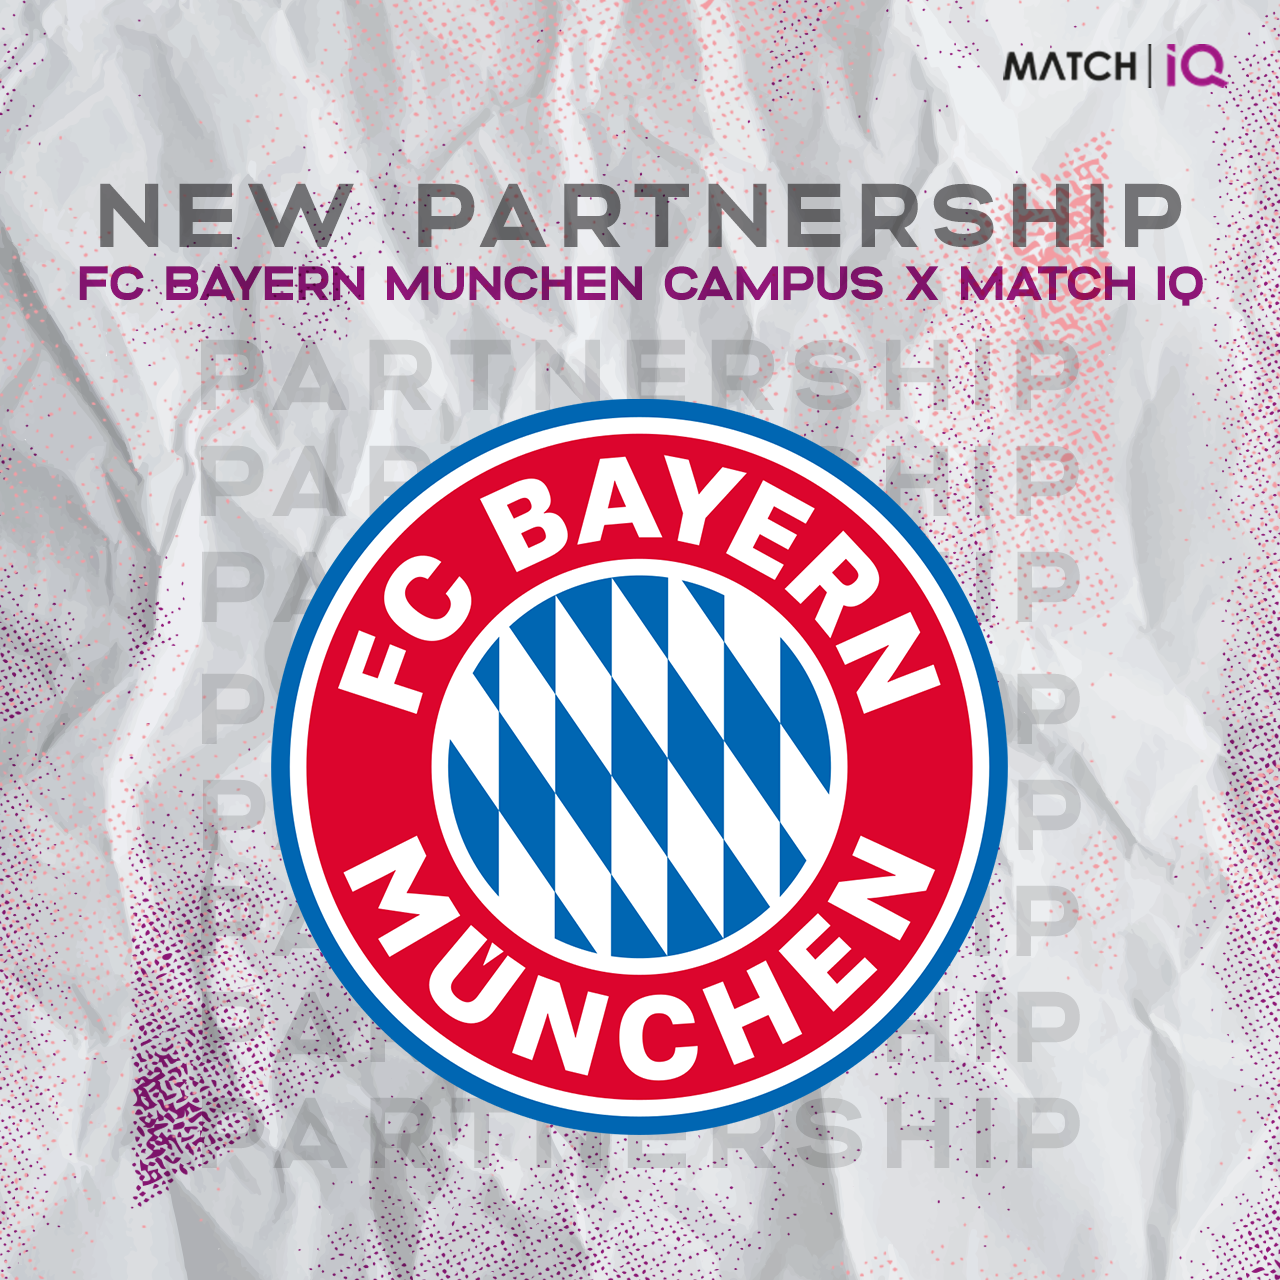 Match IQ und FC Bayern Campus kooperieren zukünftig!